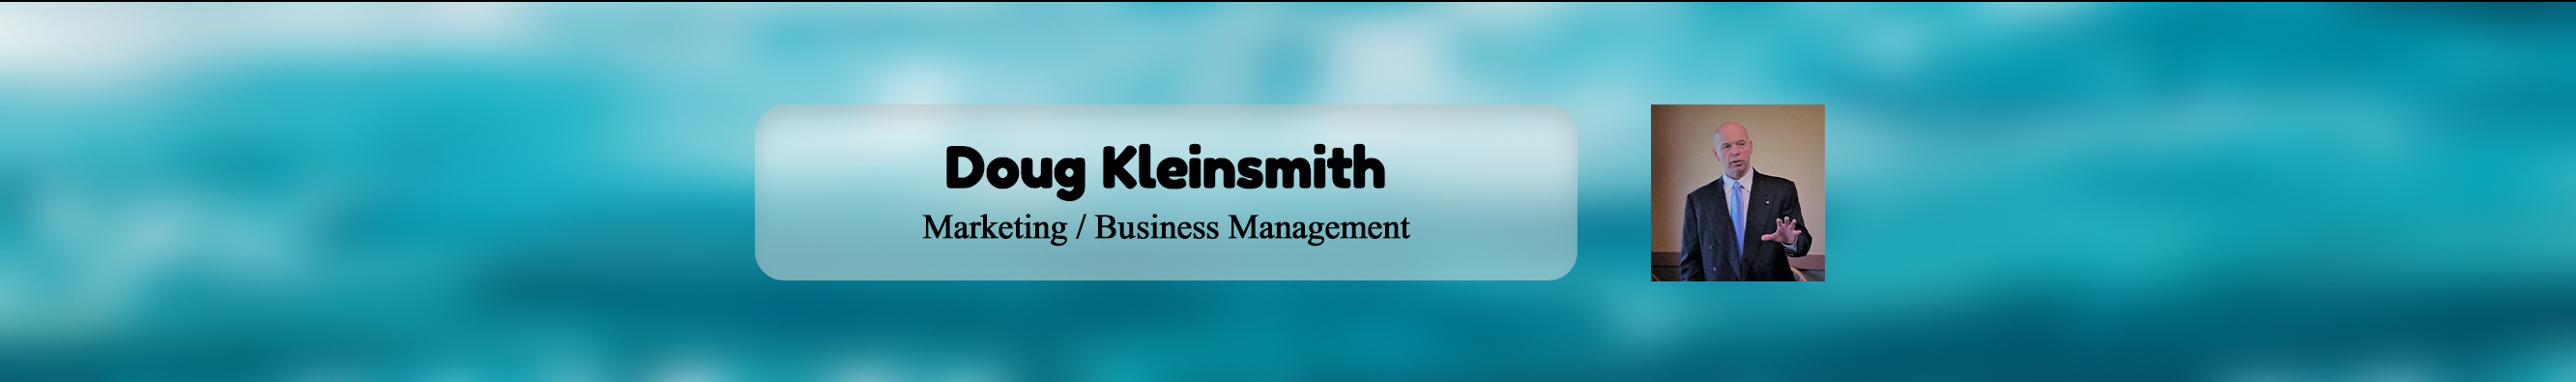 Doug Kleinsmith's profile banner